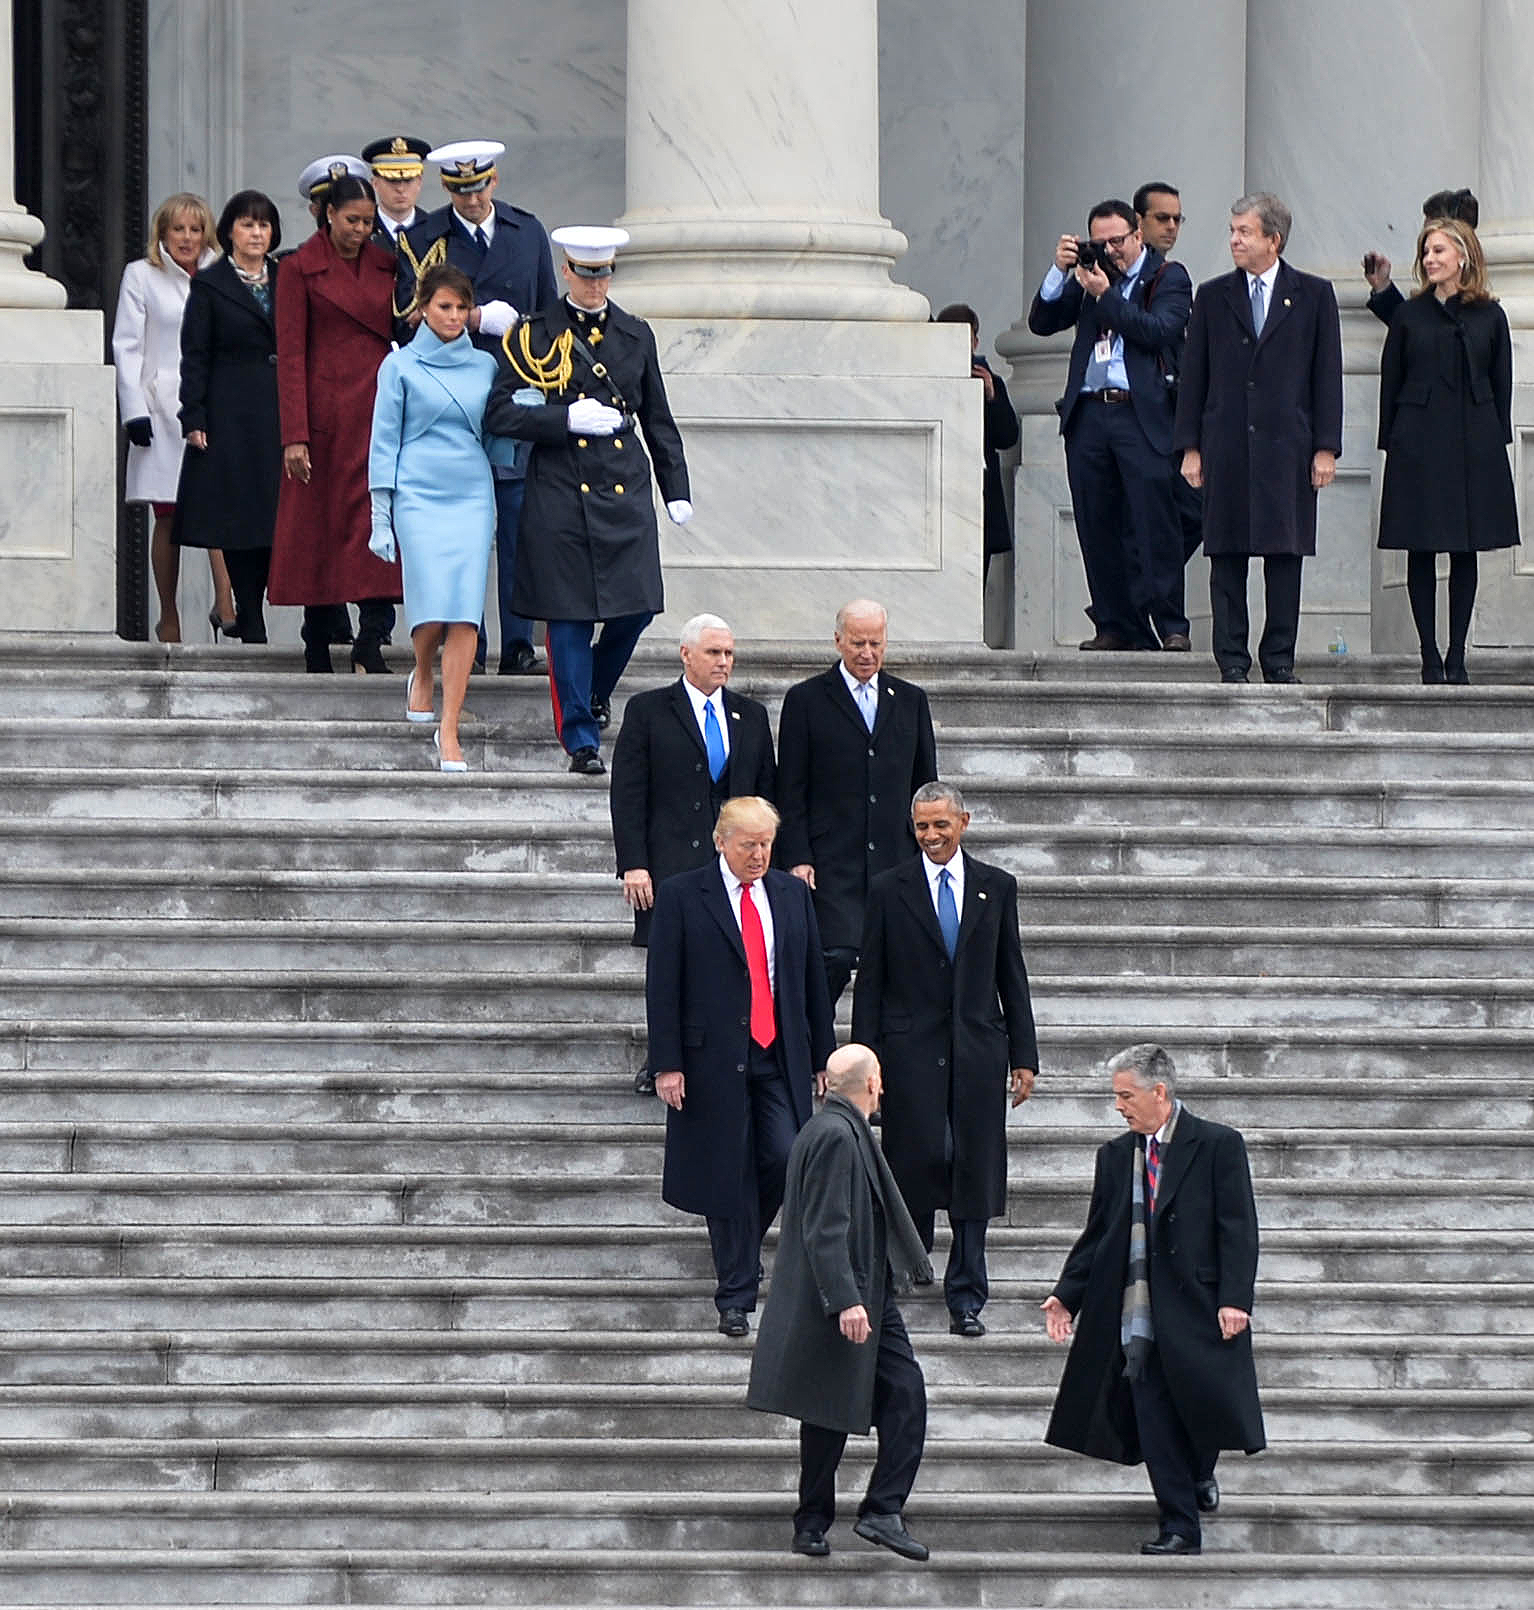 Обама и Тръмп слизат по стълбите на Капитолия след встъпването на Тръмп в президентска длъжност